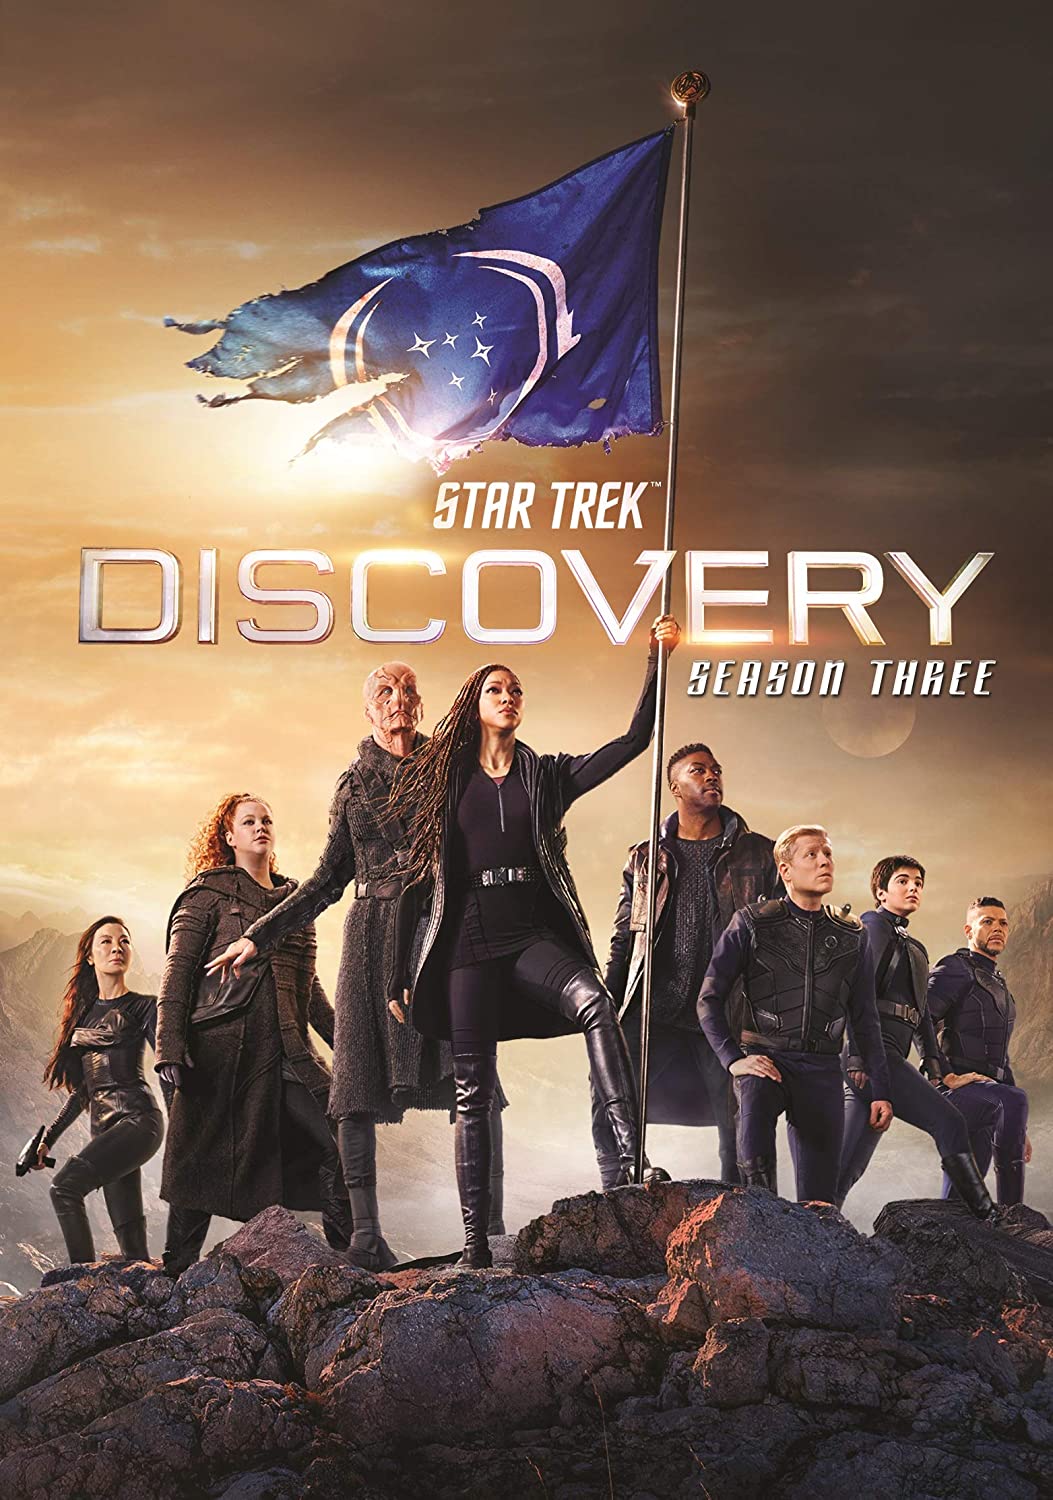 ดูหนังออนไลน์ฟรี Star Trek Discovery Season 3 EP4 สตาร์ เทรค ดิสคัฟเวอรี่ ซีซั่นที่ 3 ตอนที่ 4